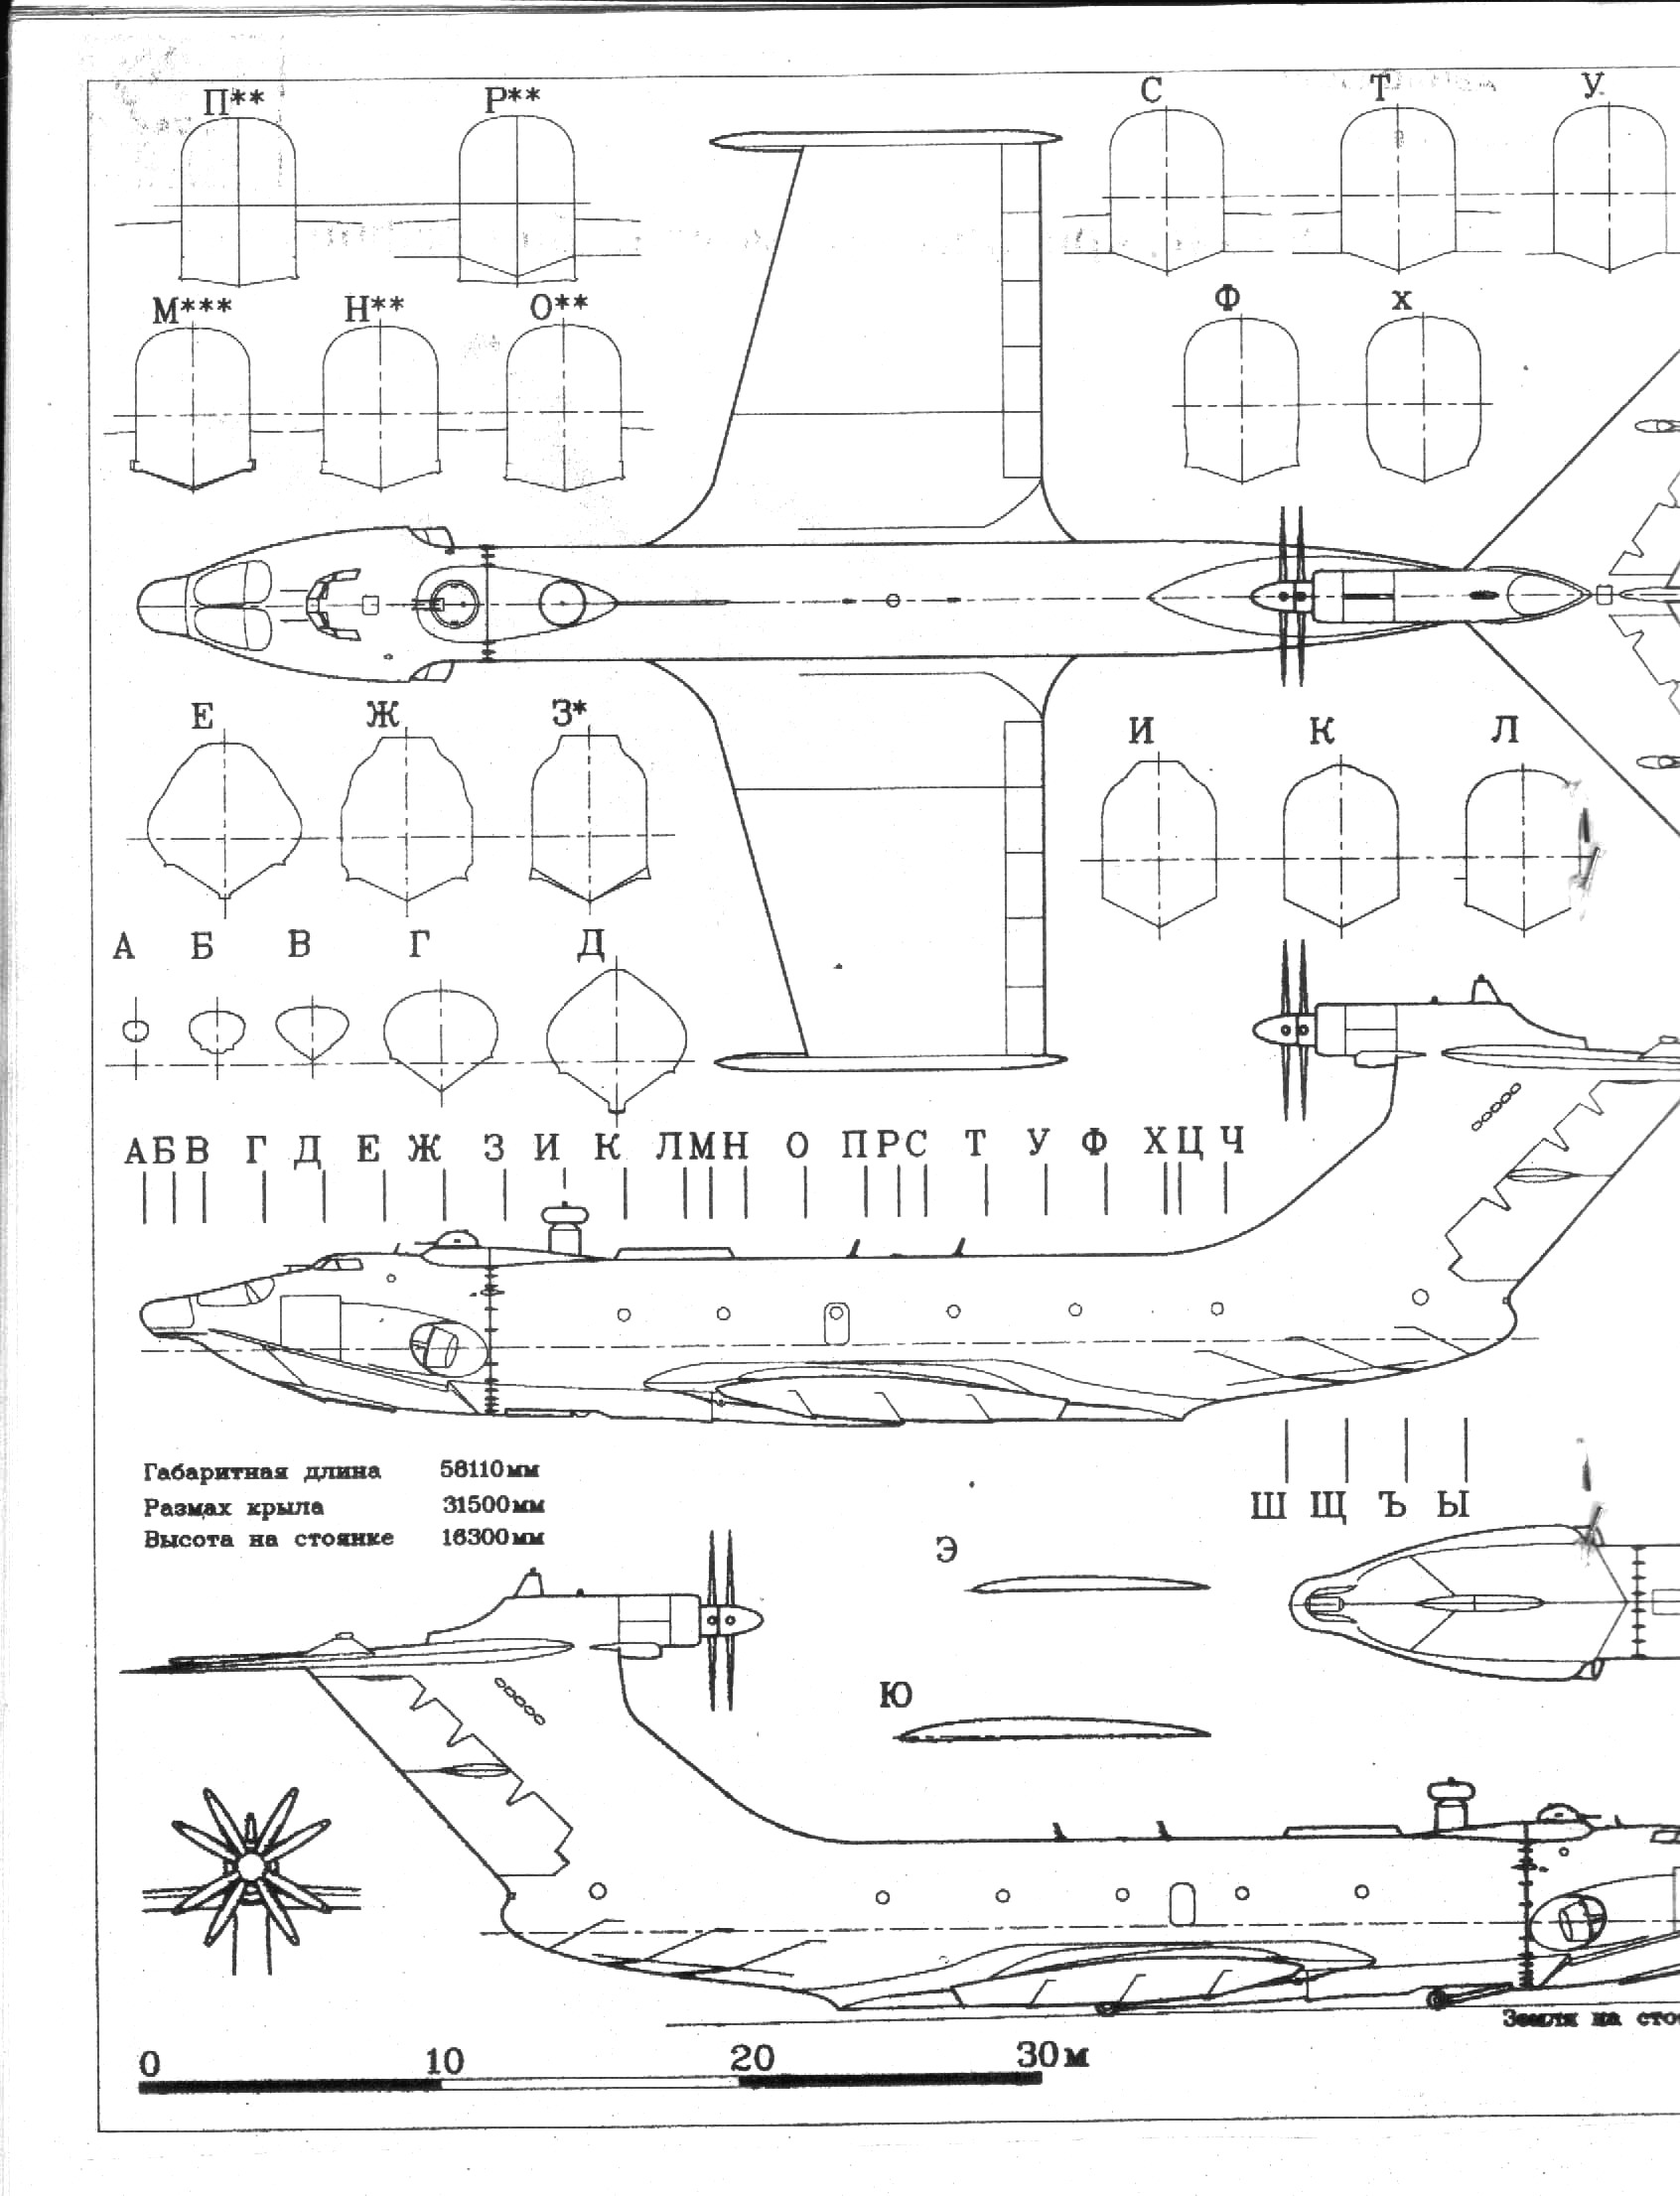 A-90 Orlyonok blueprint